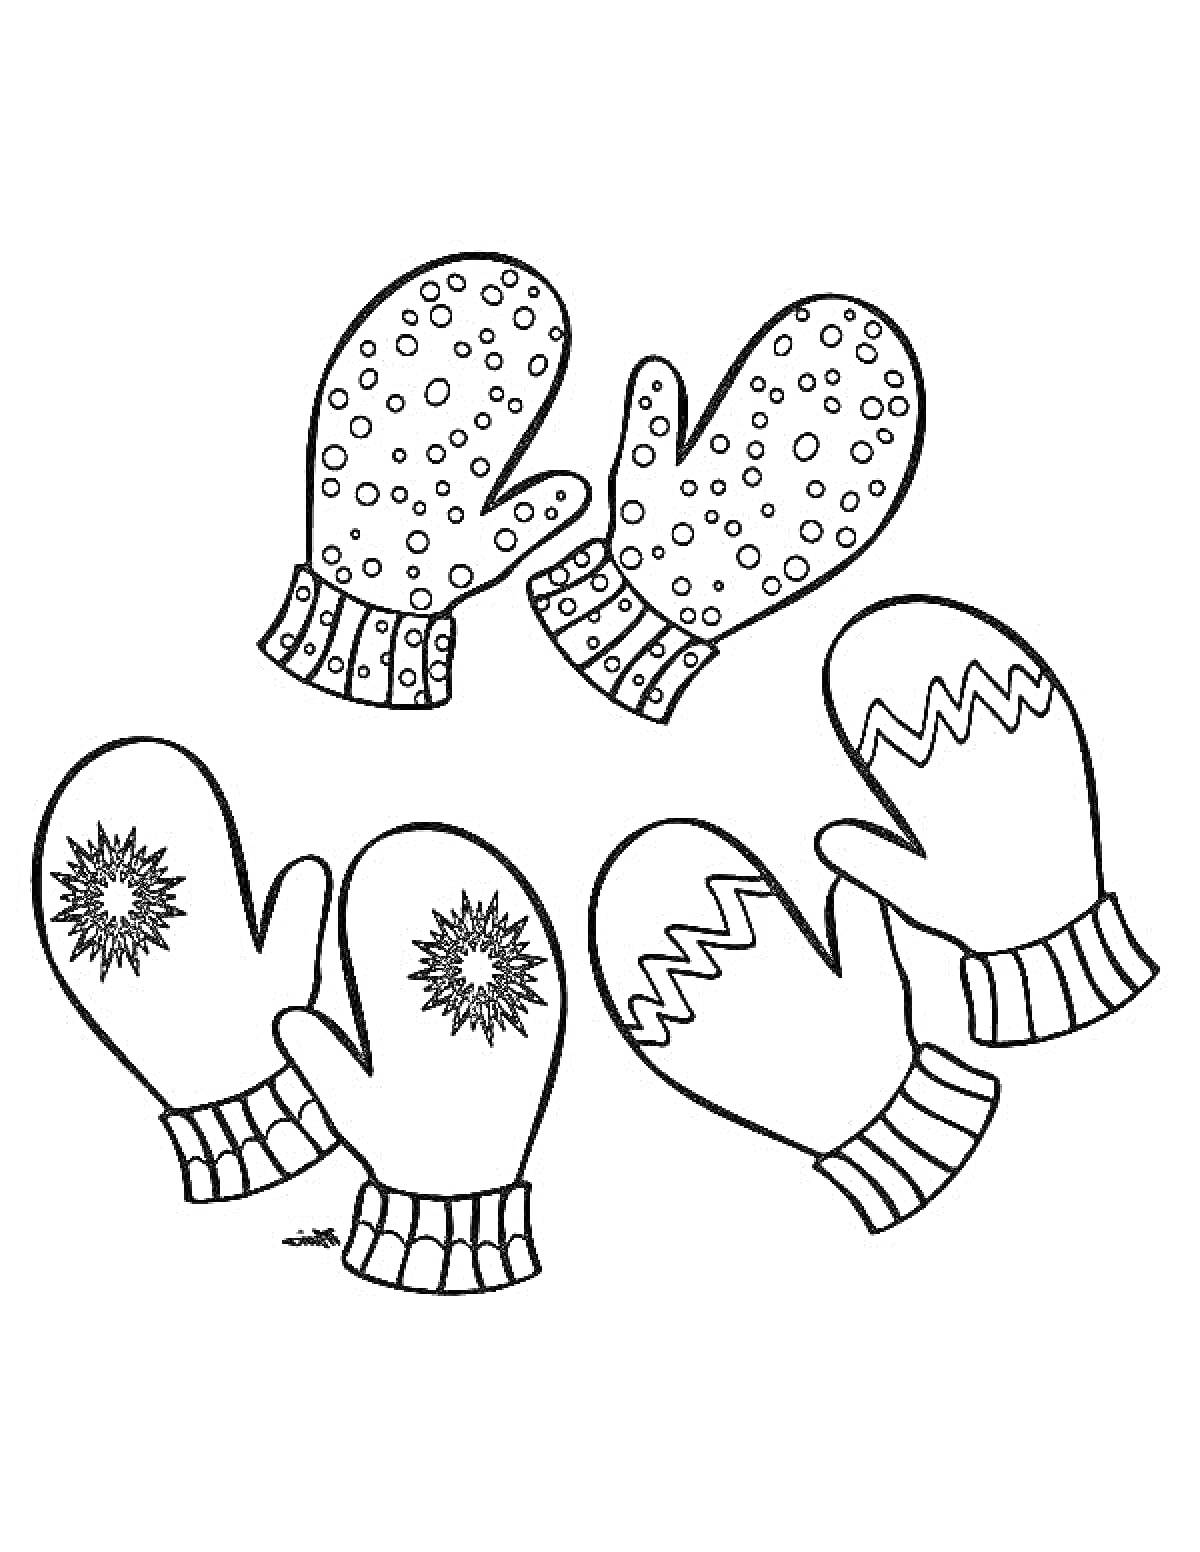 Раскраска Рукавички с различными узорами (в горошек, с зигзагом, со снежинками)